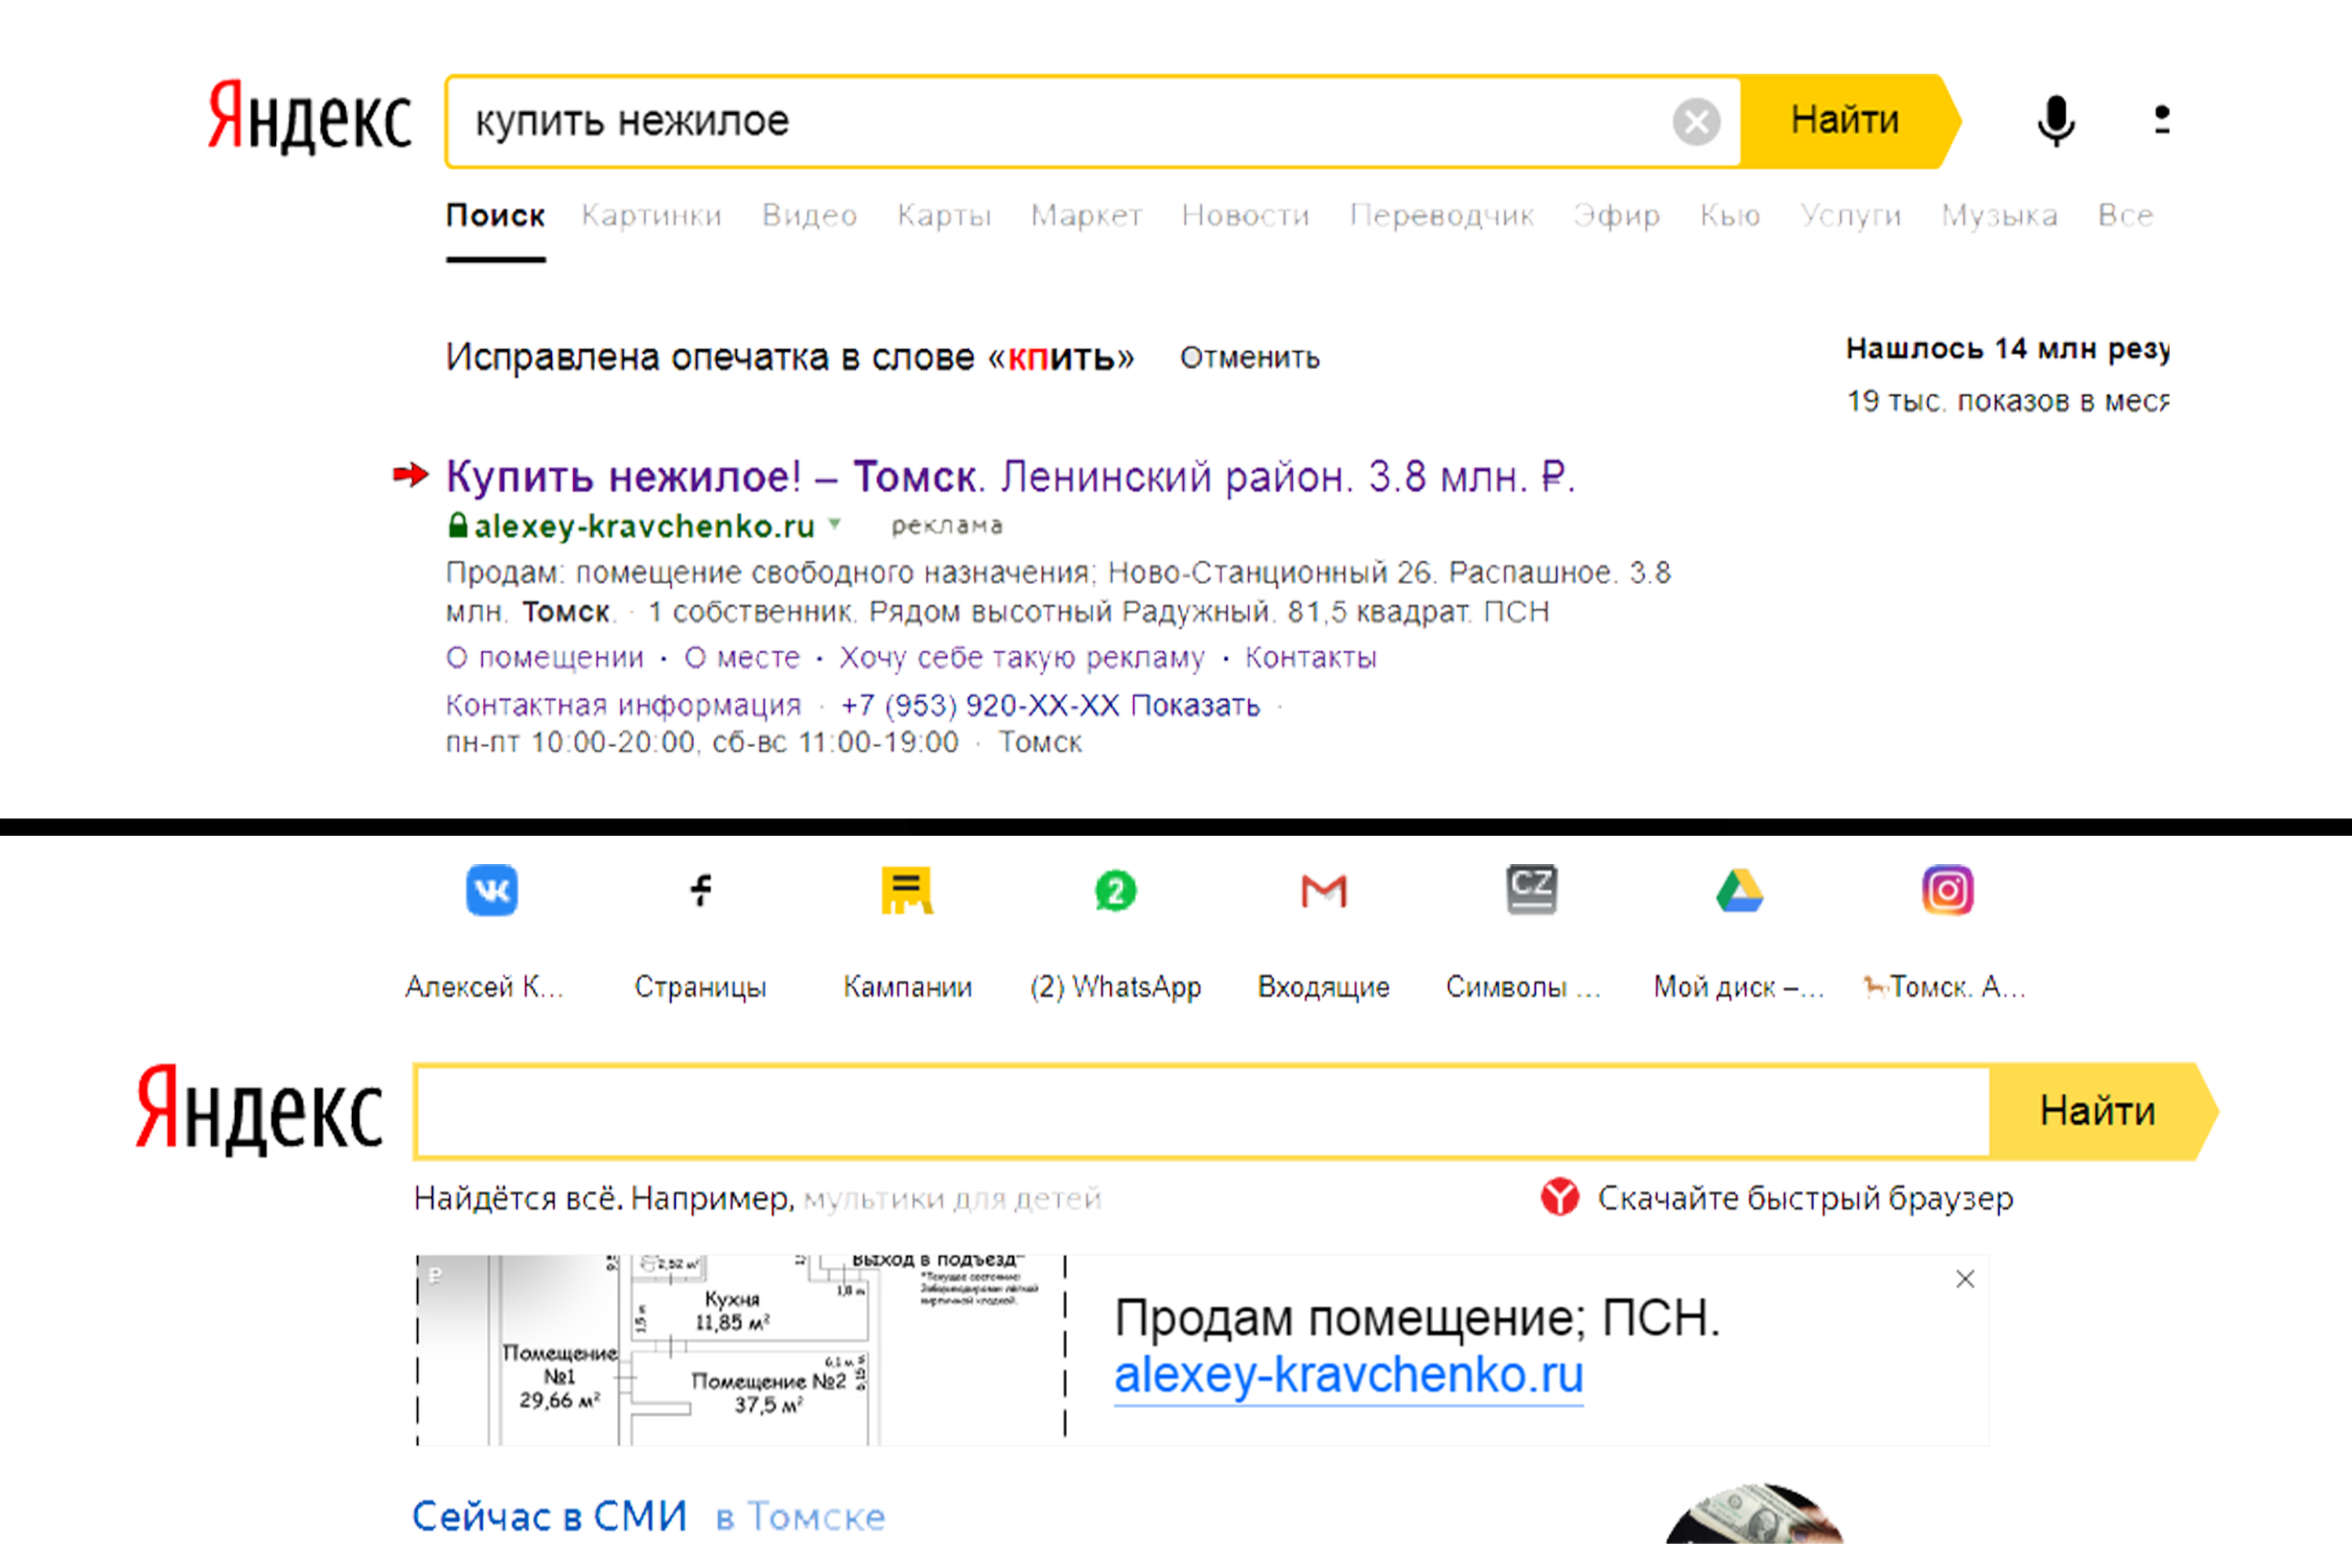 Примеры поисковых объявлений с использованием технологий Яндекс; результаты под поисковым запросом и баннер на главной странице поиска.